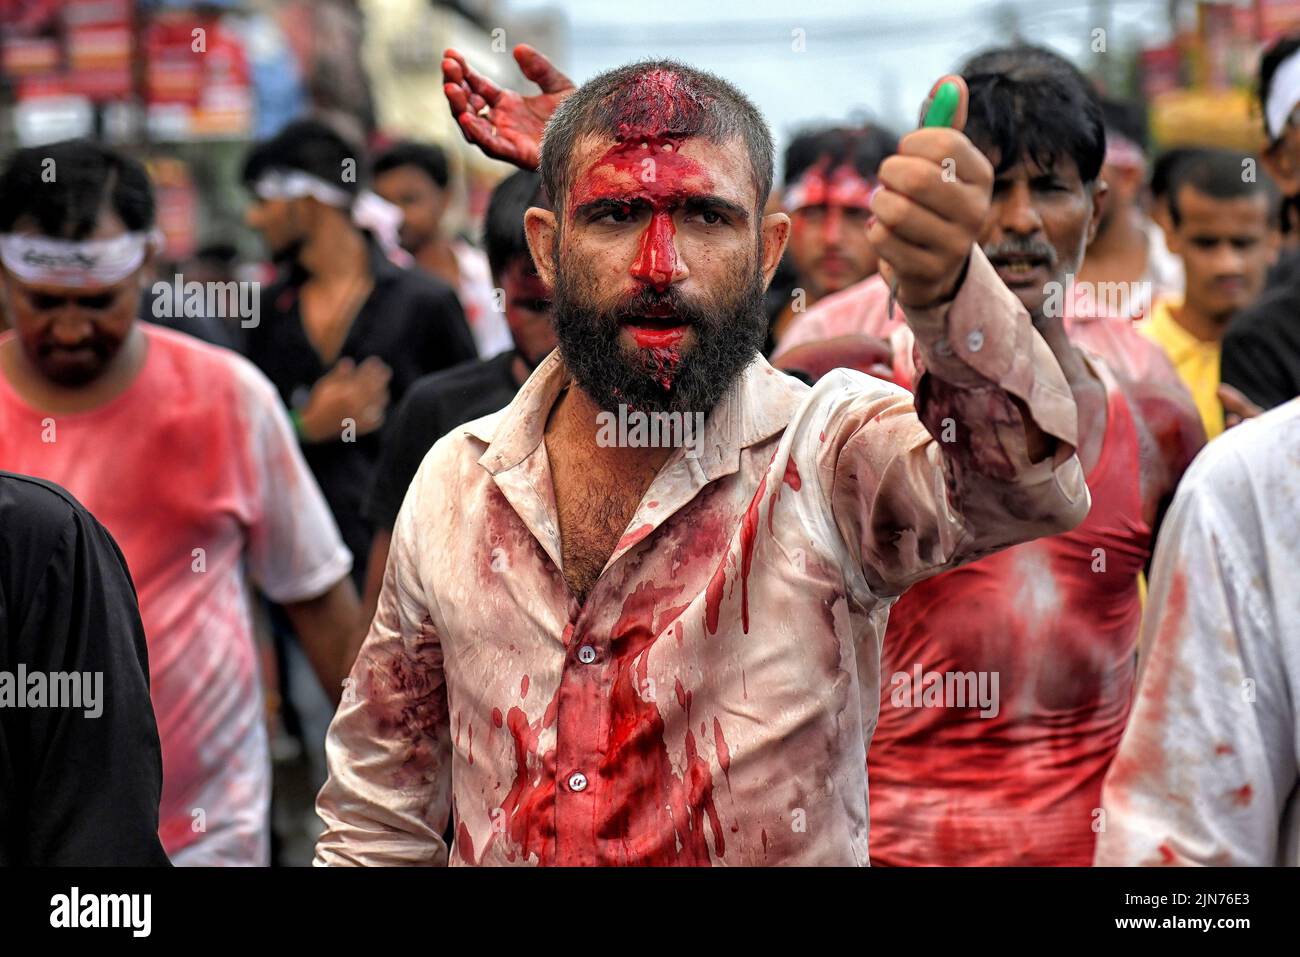 (NOTE AUX ÉDITEURS : l'image contient du contenu graphique.) Les musulmans chiites couverts de sang battent leur poitrine et leur tête avec des lames et des épées lors de la procession muharram de Kolkata. Muharram est le premier mois du calendrier islamique et Ashura est le dixième jour du mois de Muharram sur lequel se fait la commémoration du martyre de l'Imam Hussain, petit-fils du prophète Mahomet (PBUH), pendant la bataille de Karbala. C'est une partie de deuil pour les musulmans chiites et un jour de jeûne pour les musulmans sunnites qui est observé partout dans le monde. Banque D'Images